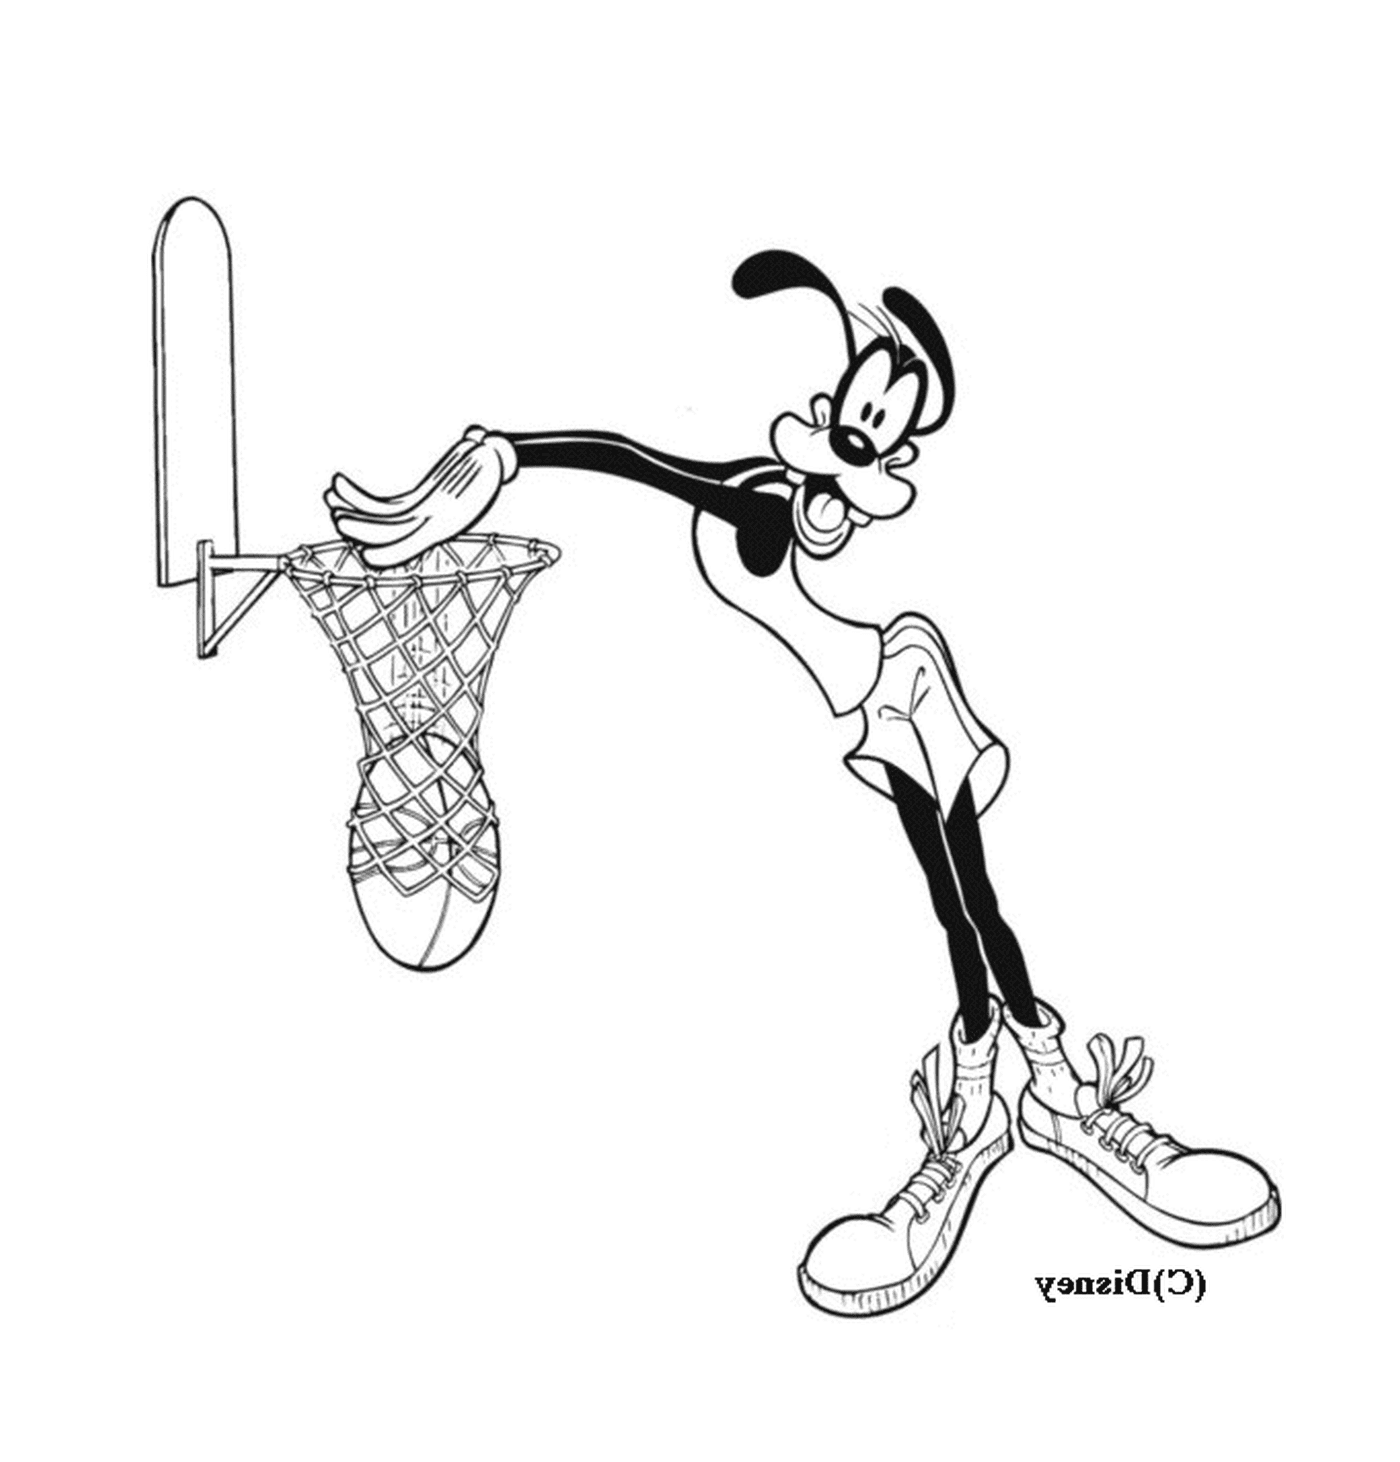  Dingo spielt Basketball in einem Cartoon 